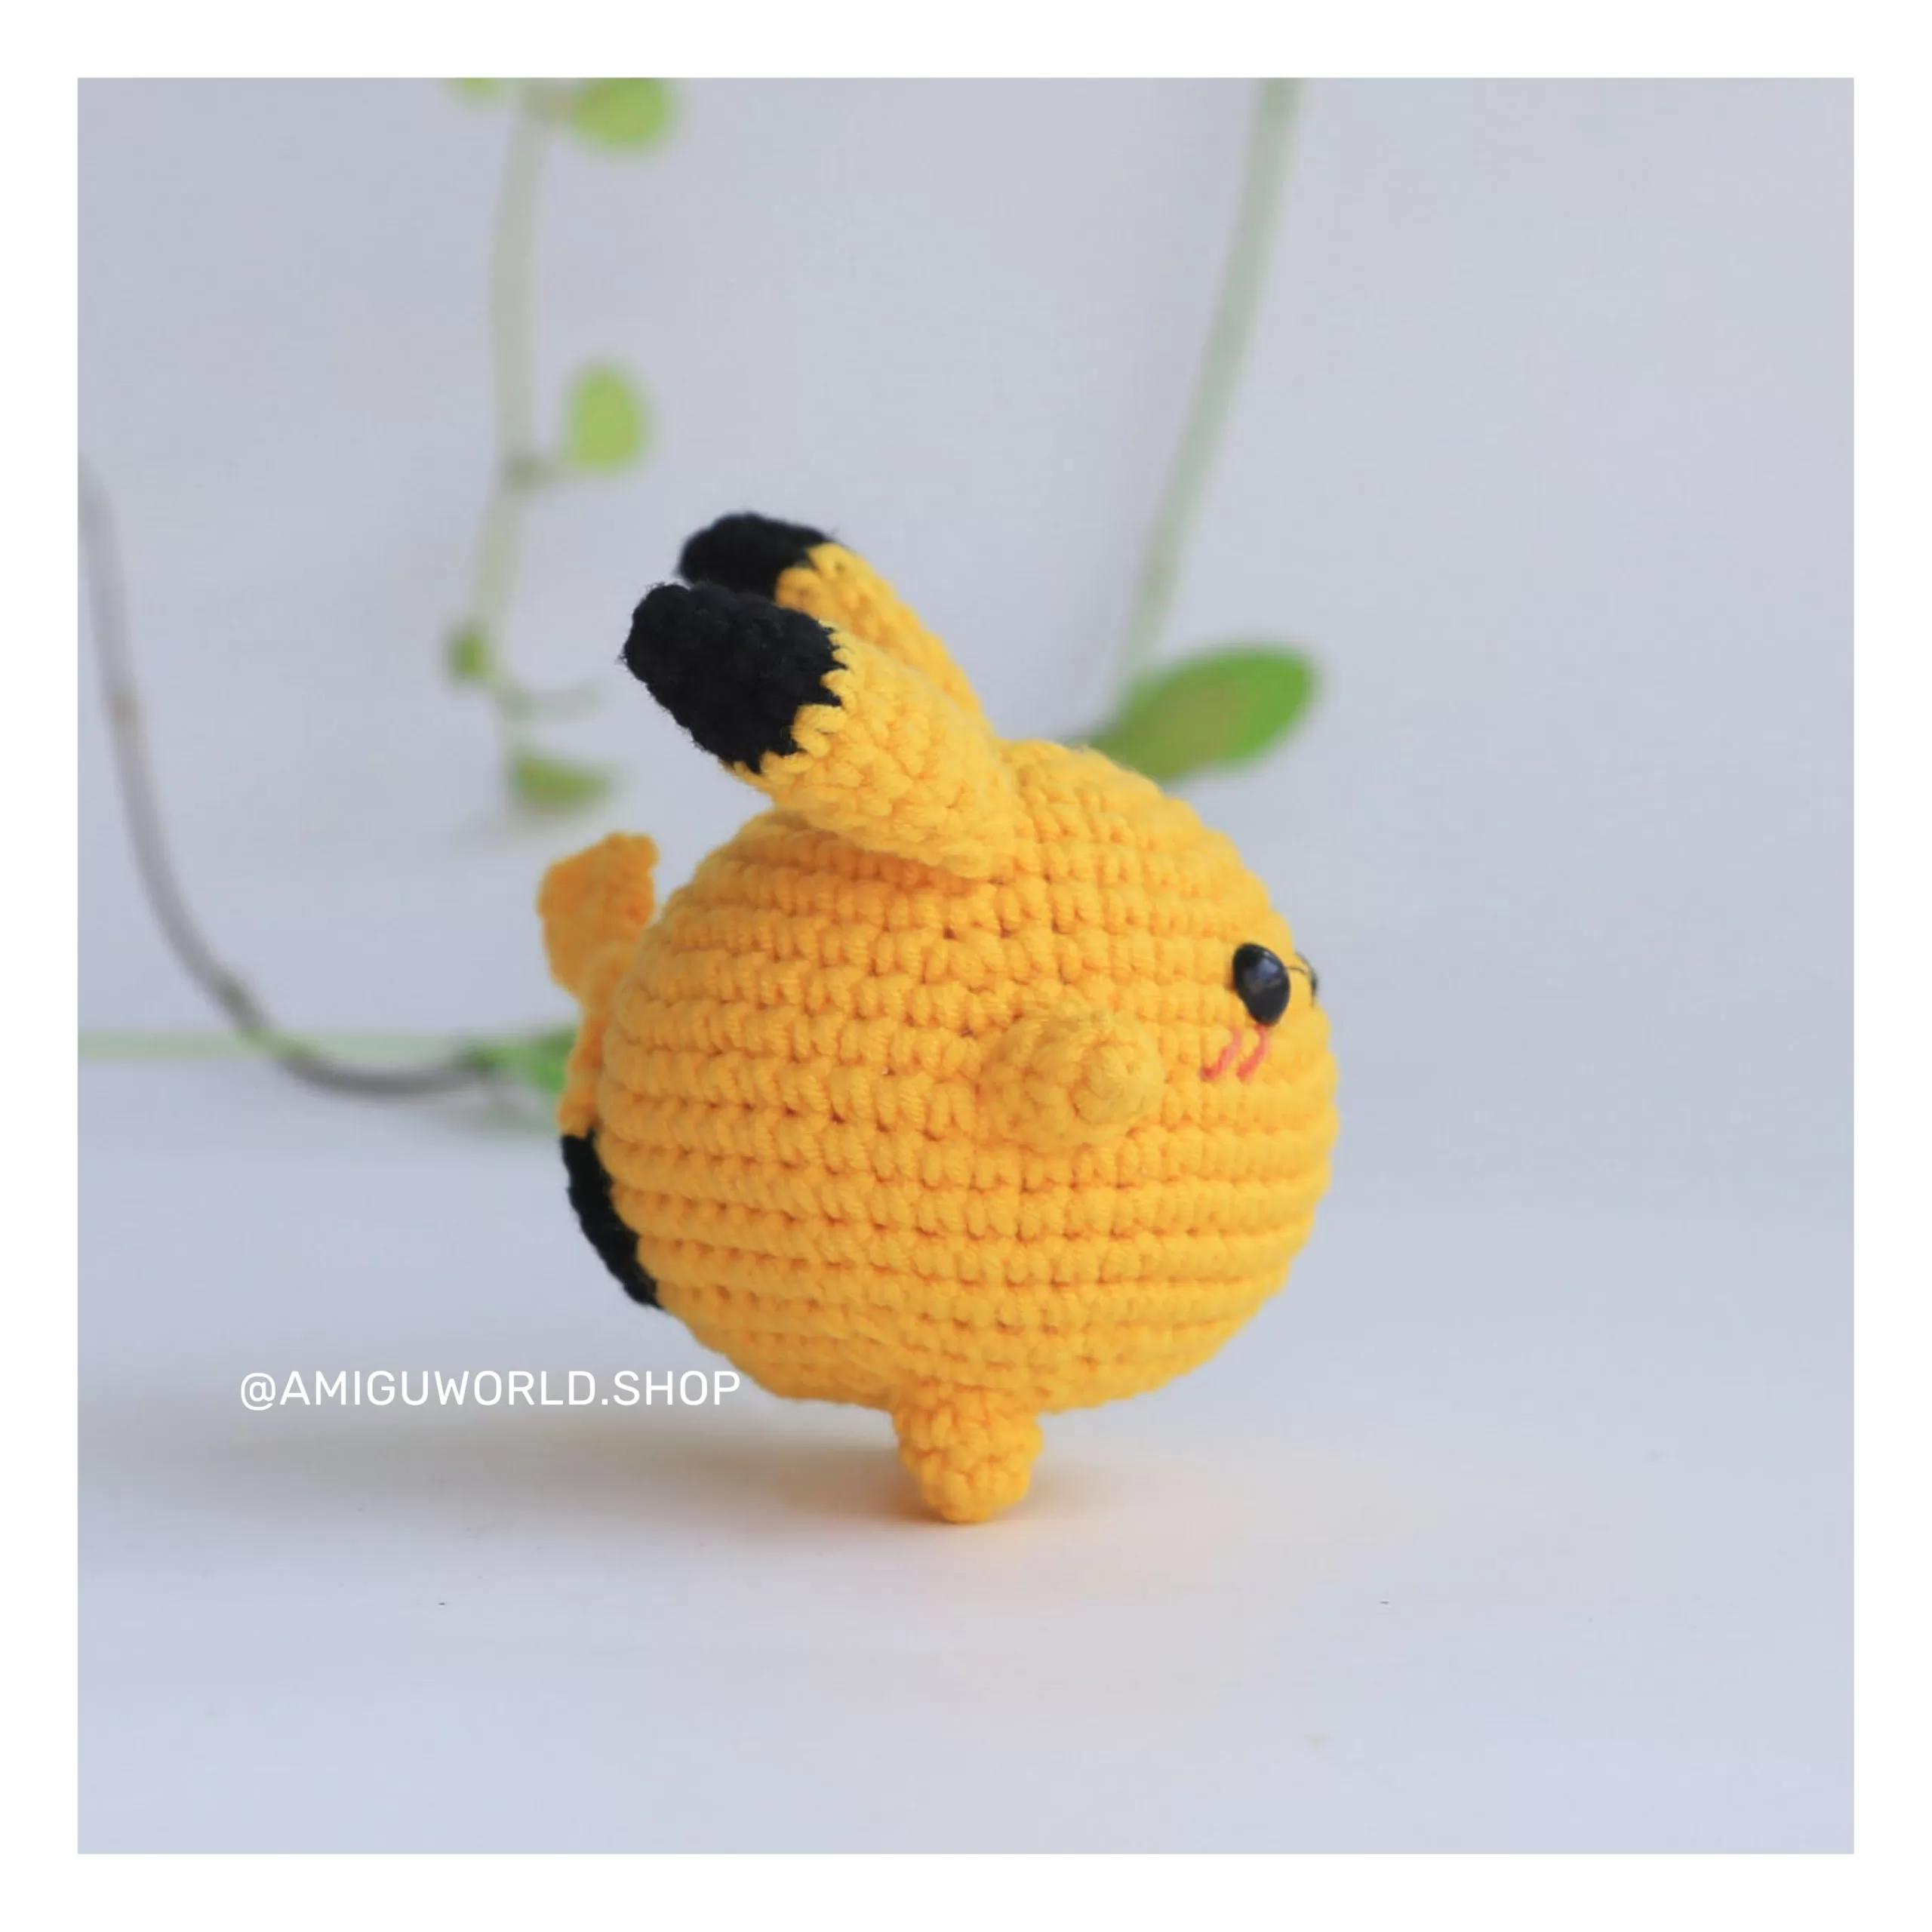 pikachu-amigurumi-doll-finished-by amiguworld (6)